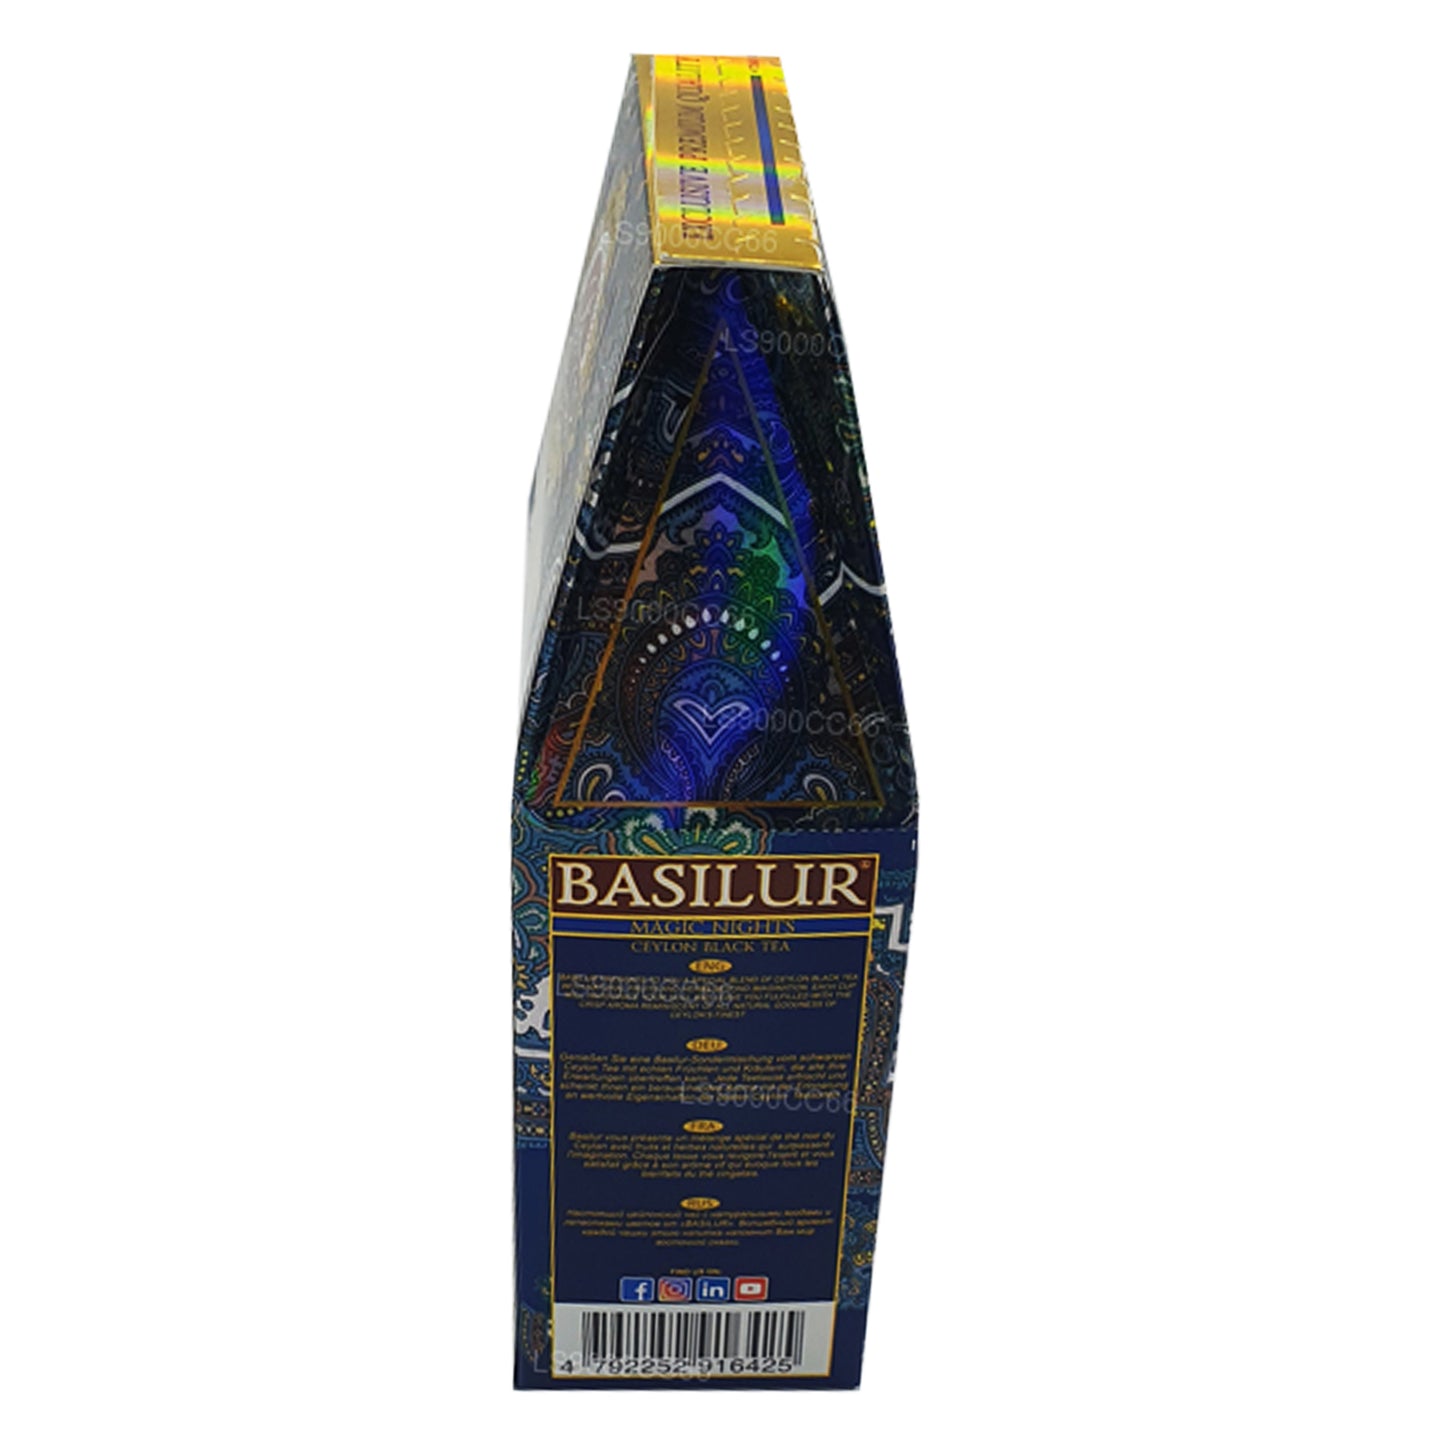 Té de hojas negras de Ceilán Basilur Magic Nights (100 g)